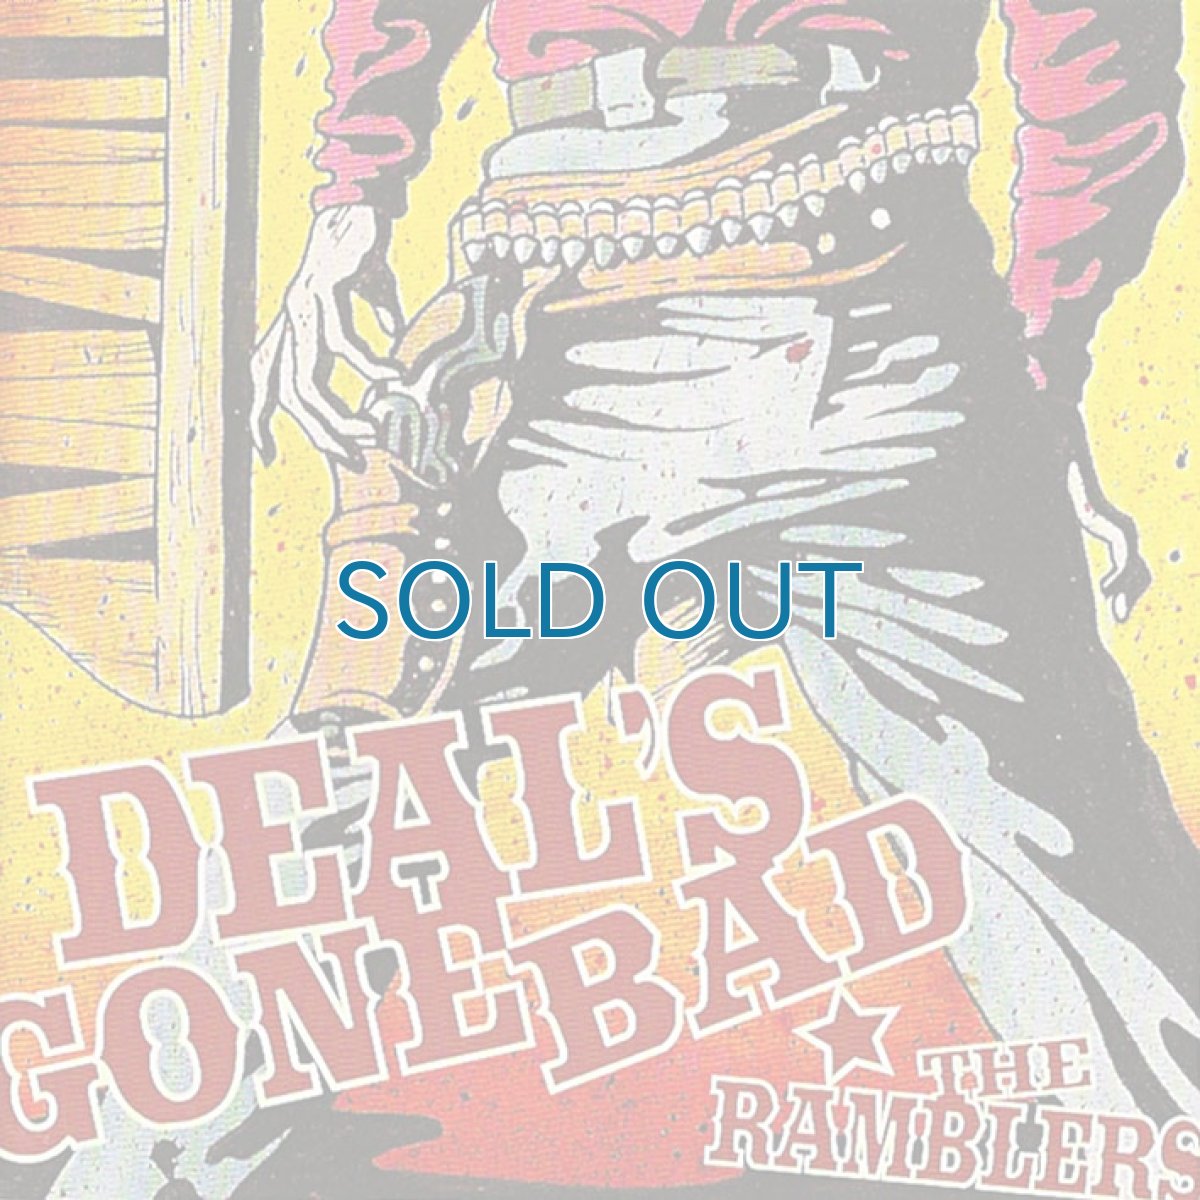 画像1: Deal's Gone Bad / The Ramblers (1)